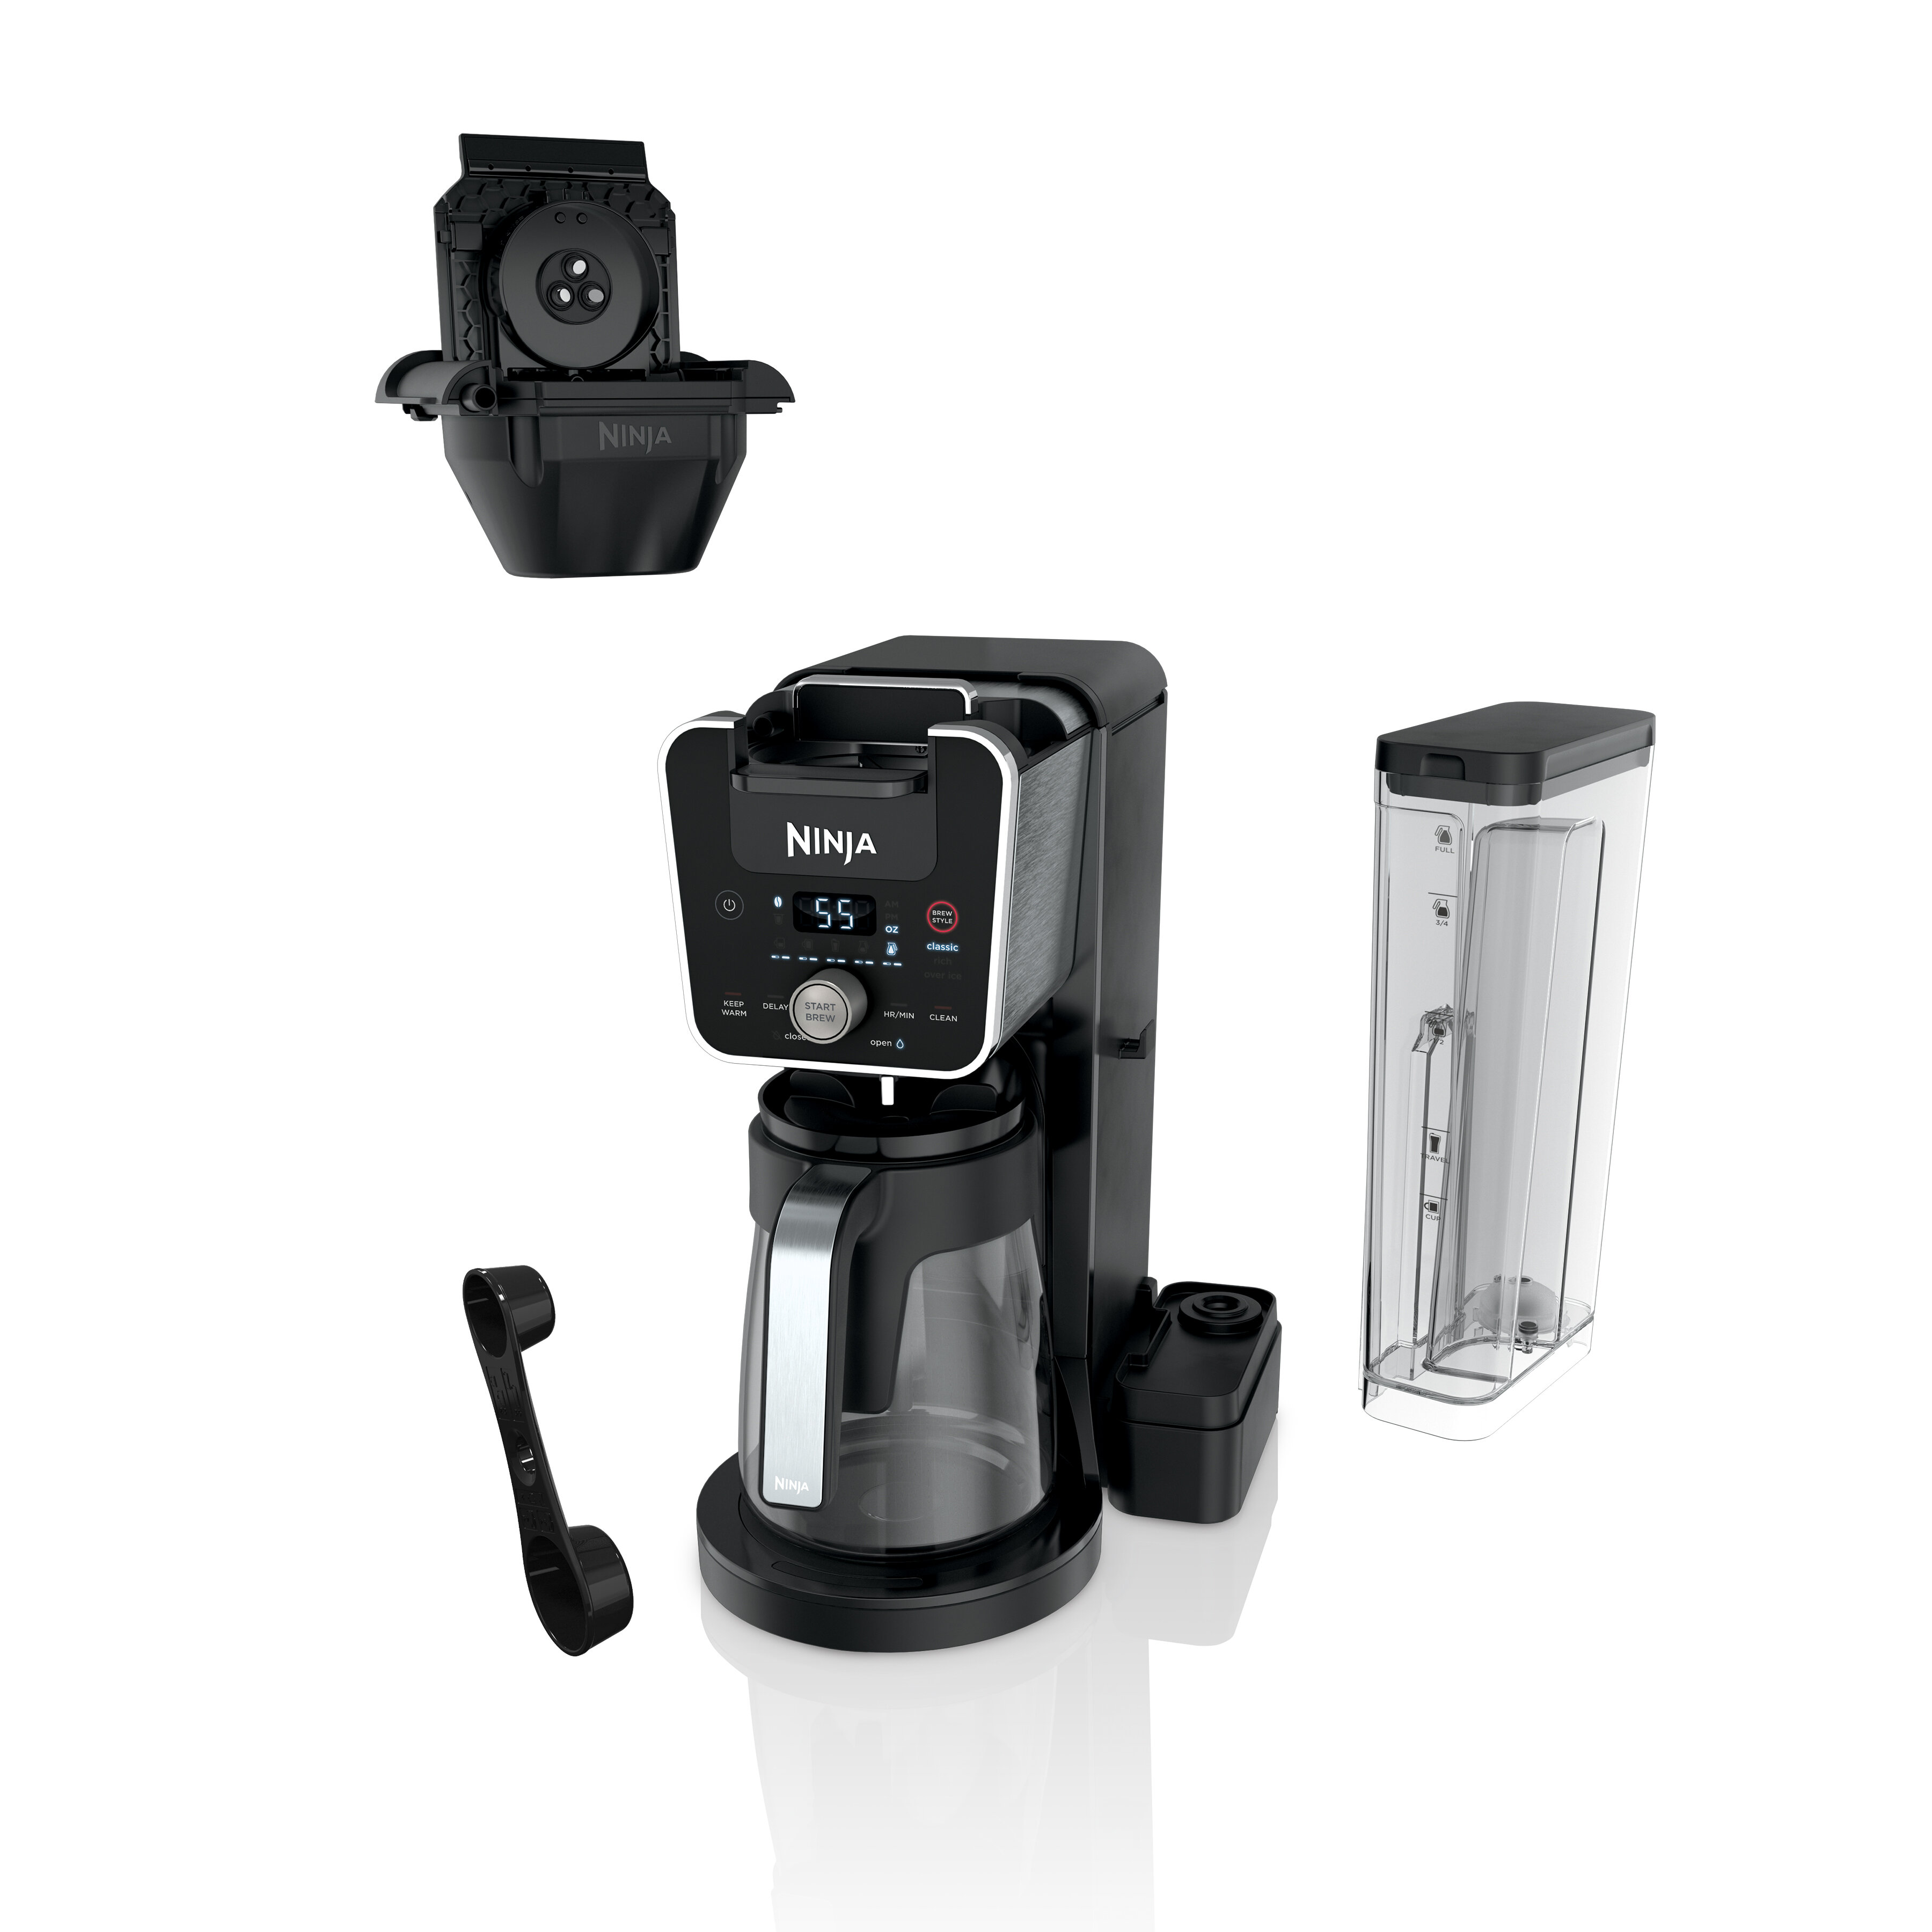 https://assets.wfcdn.com/im/70250860/compr-r85/1967/196755445/ninja-12-cup-dualbrew-coffee-maker.jpg